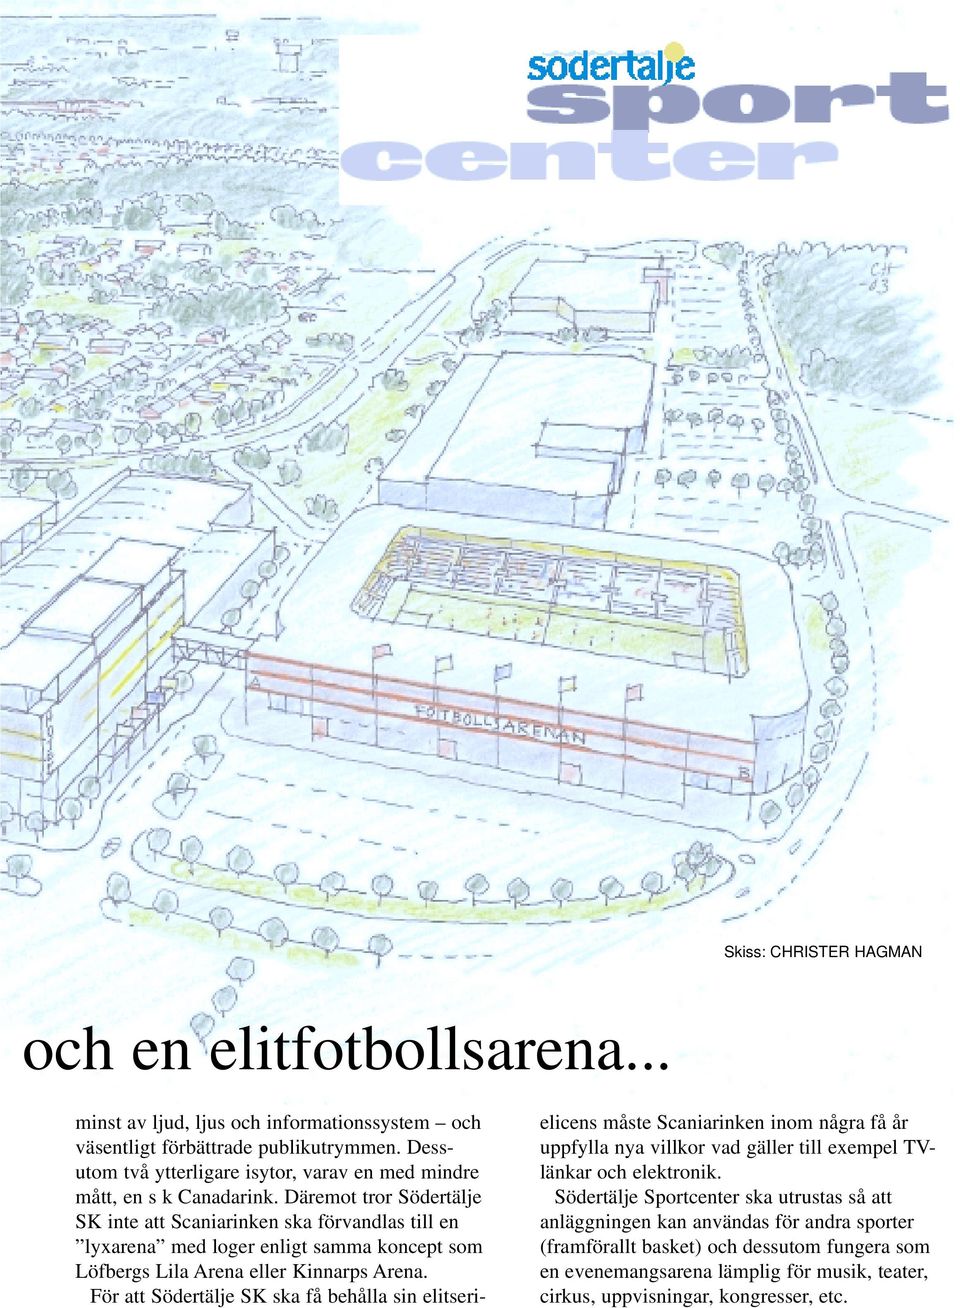 Däremot tror Södertälje SK inte att Scaniarinken ska förvandlas till en lyxarena med loger enligt samma koncept som Löfbergs Lila Arena eller Kinnarps Arena.